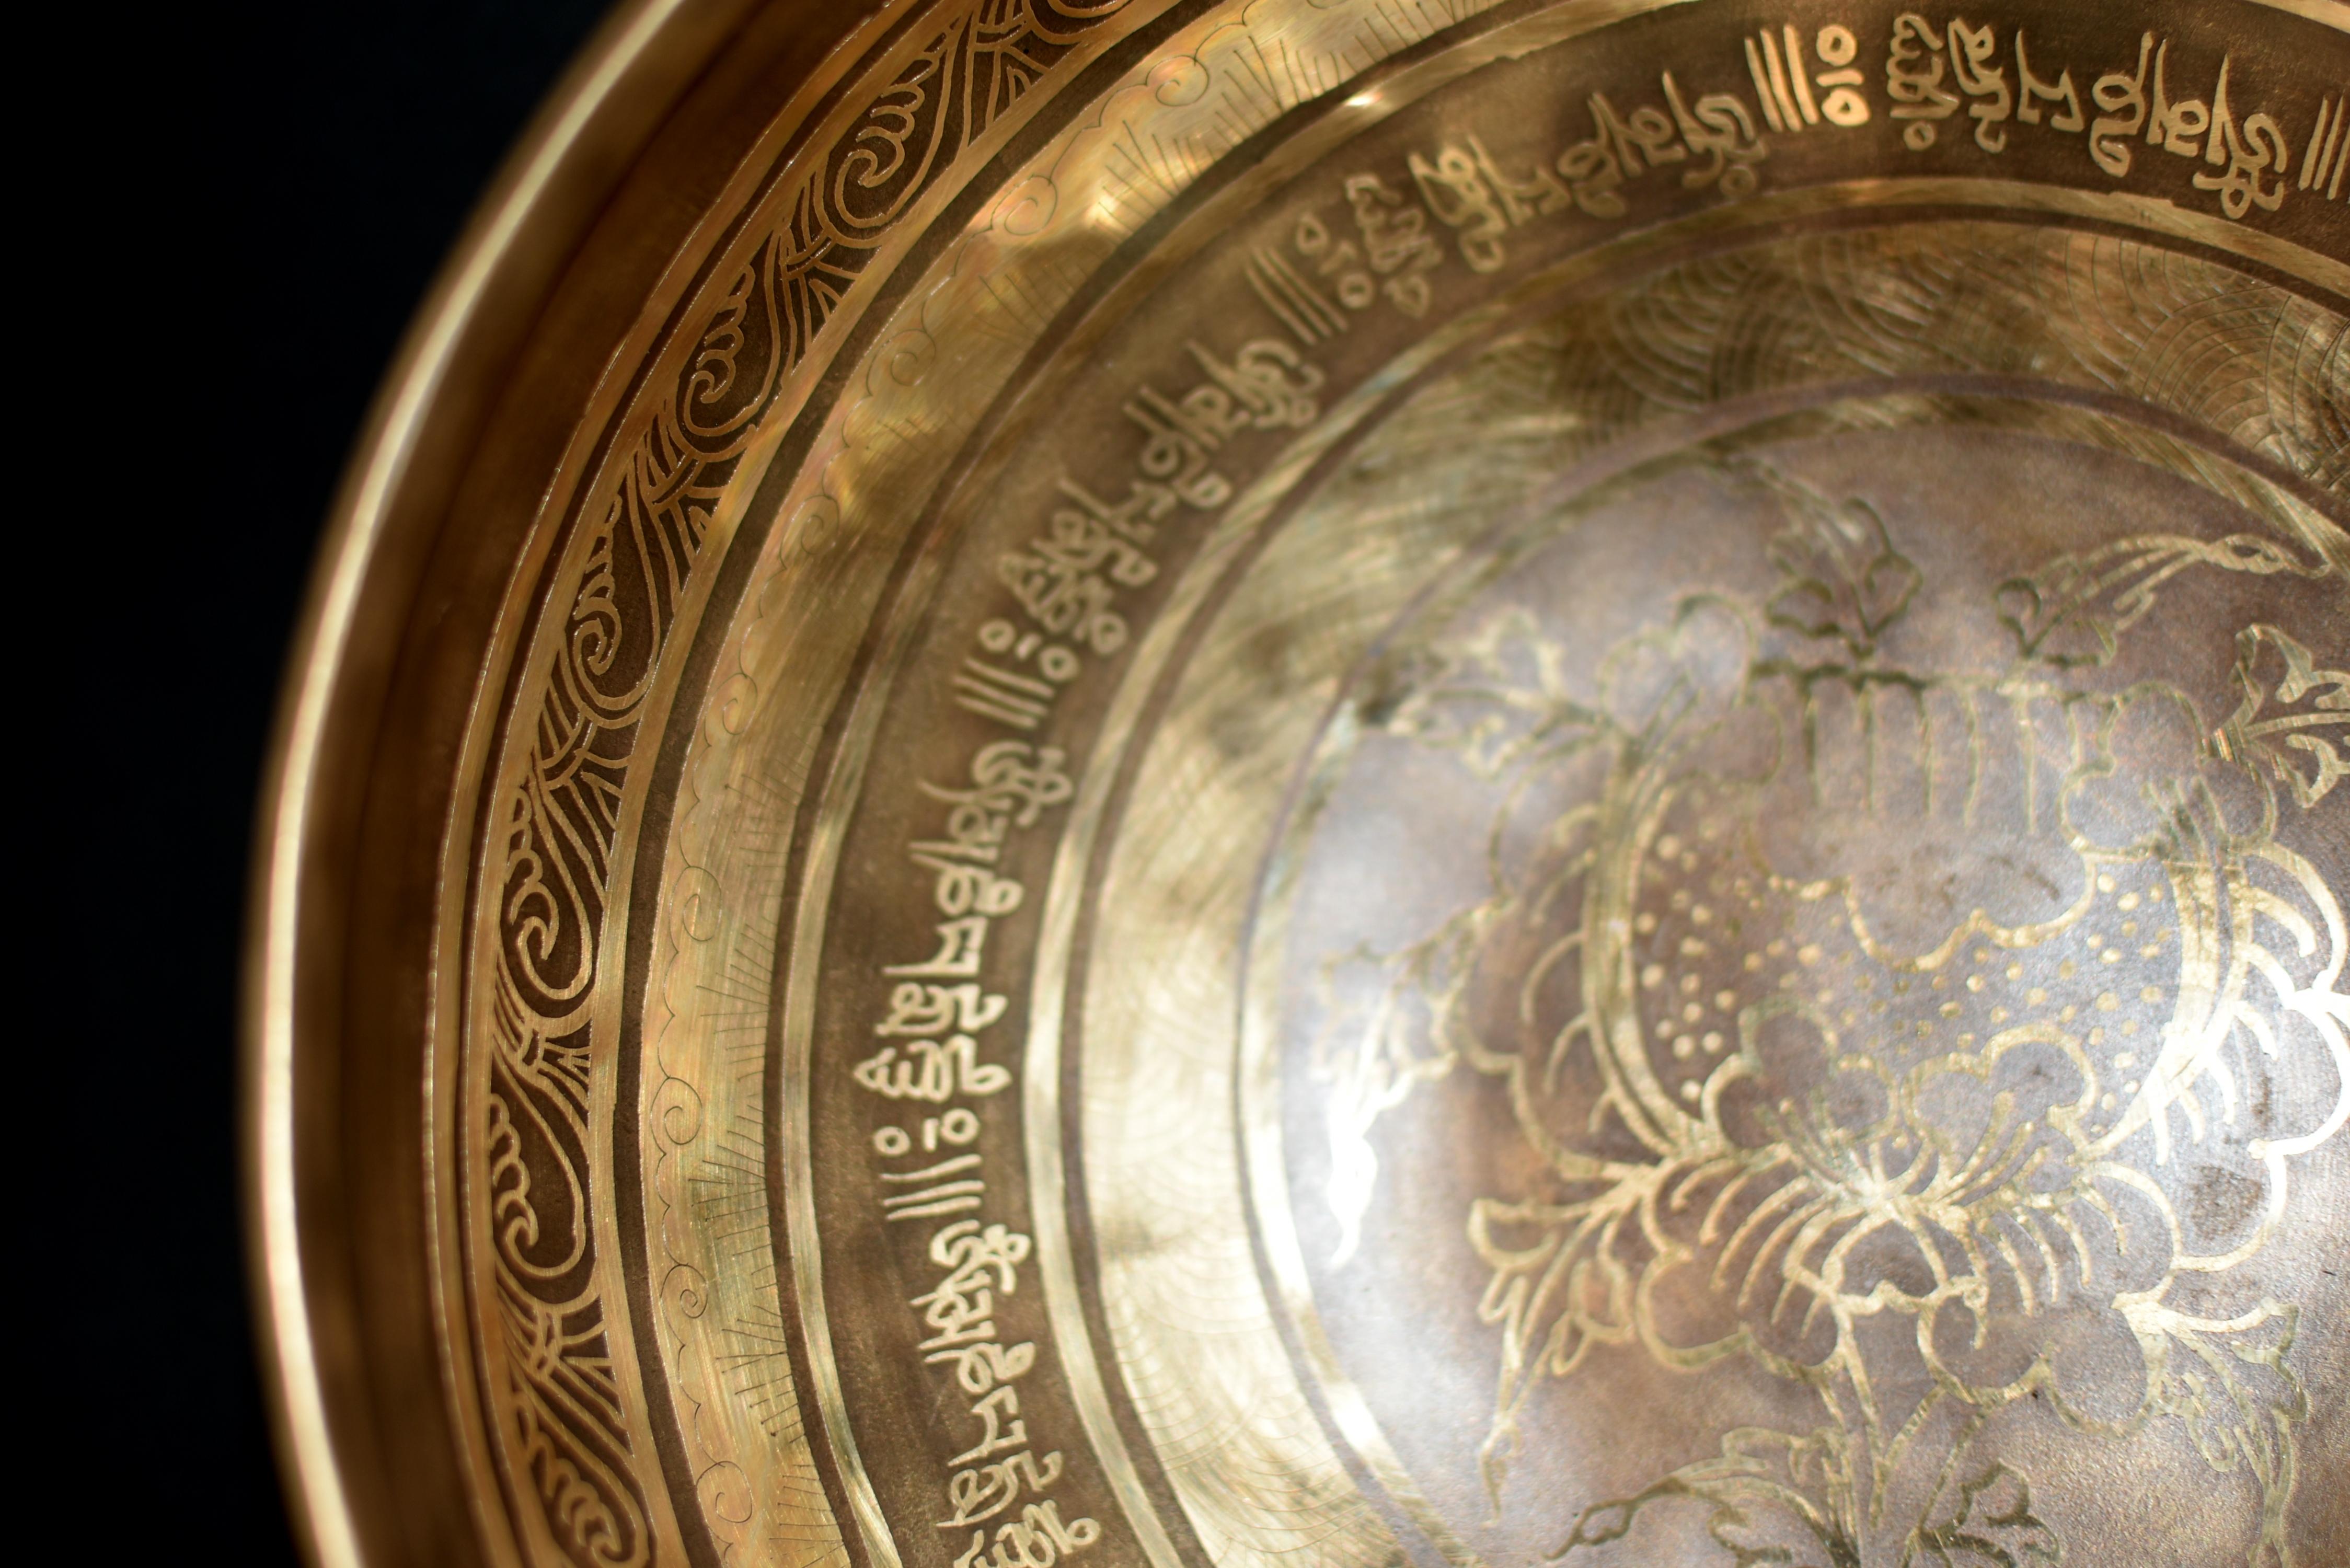 Un magnifique bol chantant de 3,1 livres entièrement gravé, incrusté et finement travaillé par les artisans spirituels du Népal. L'intérieur représente une pivoine entourée d'anneaux de coquillages, de nuages, de textes de chants tibétains et de